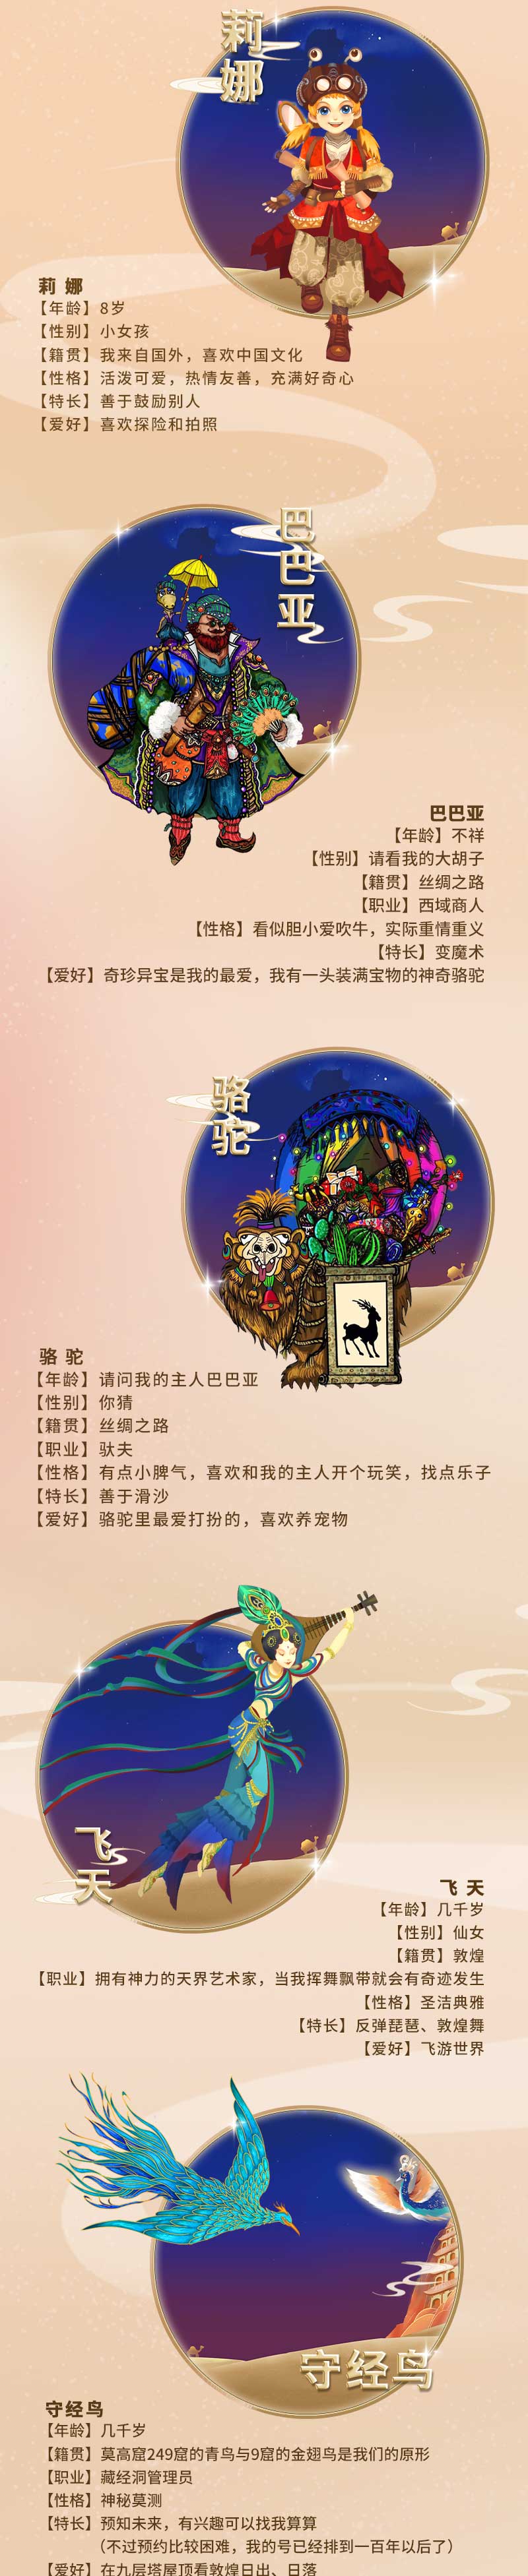 2022大船文化·亲子音乐舞台剧《敦煌奇妙夜》-深圳站